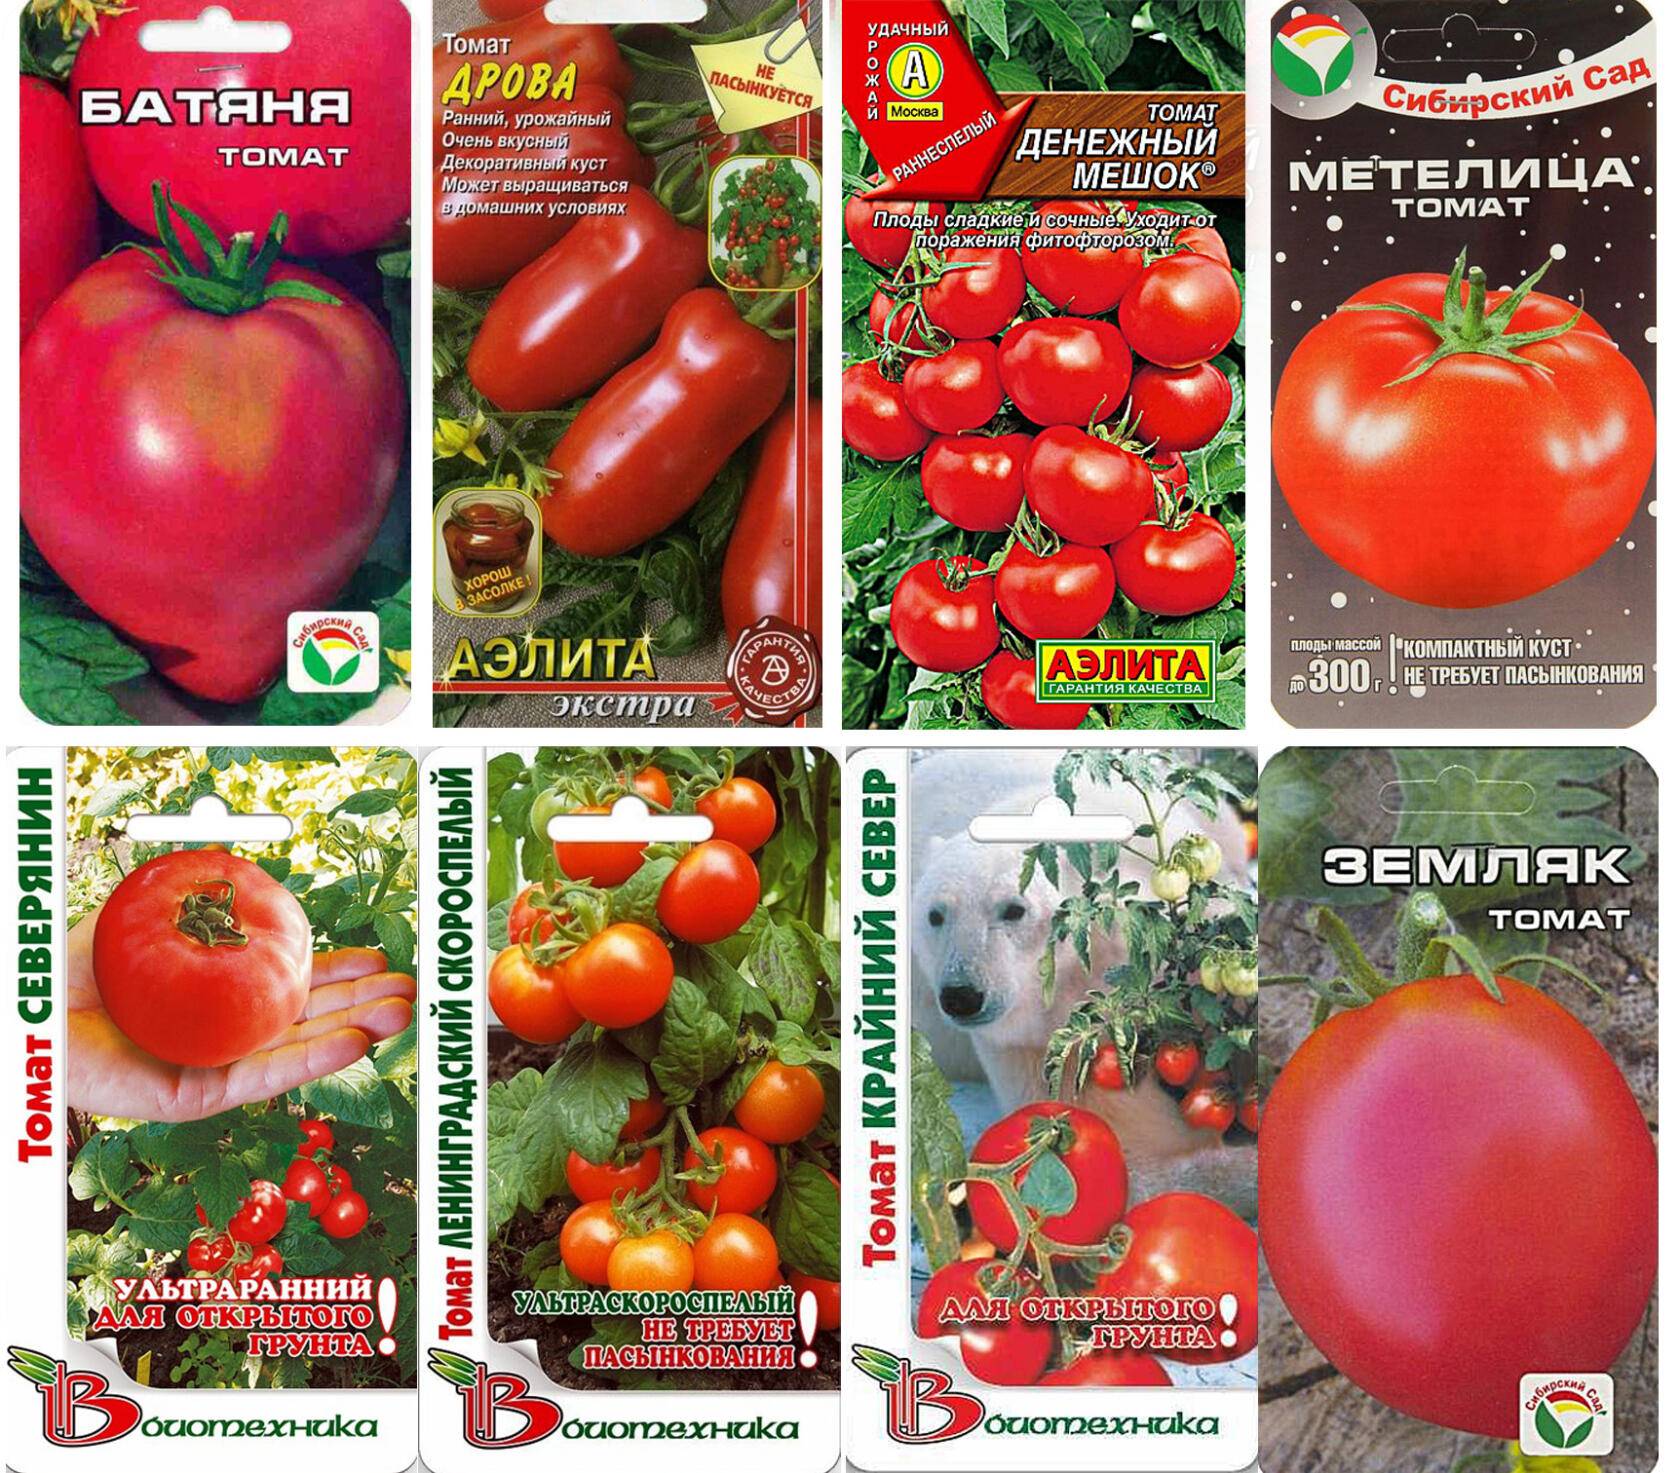 Описание балконного томата жемчужина желтая и агротехнические правила выращивания